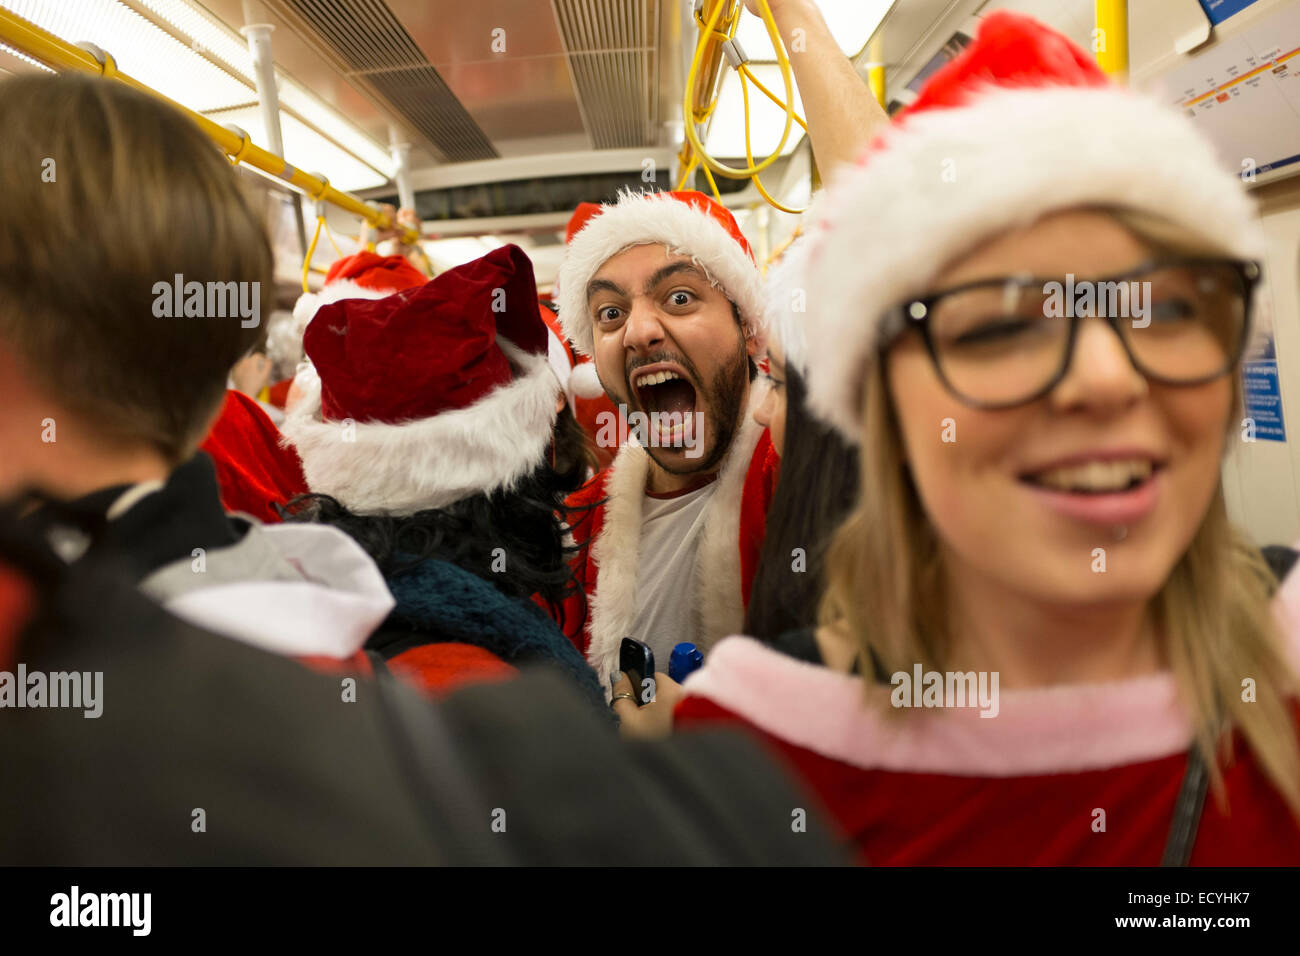 Persone vestite come Babbo Natale su un treno della metropolitana. Londra, Regno Unito. Foto Stock